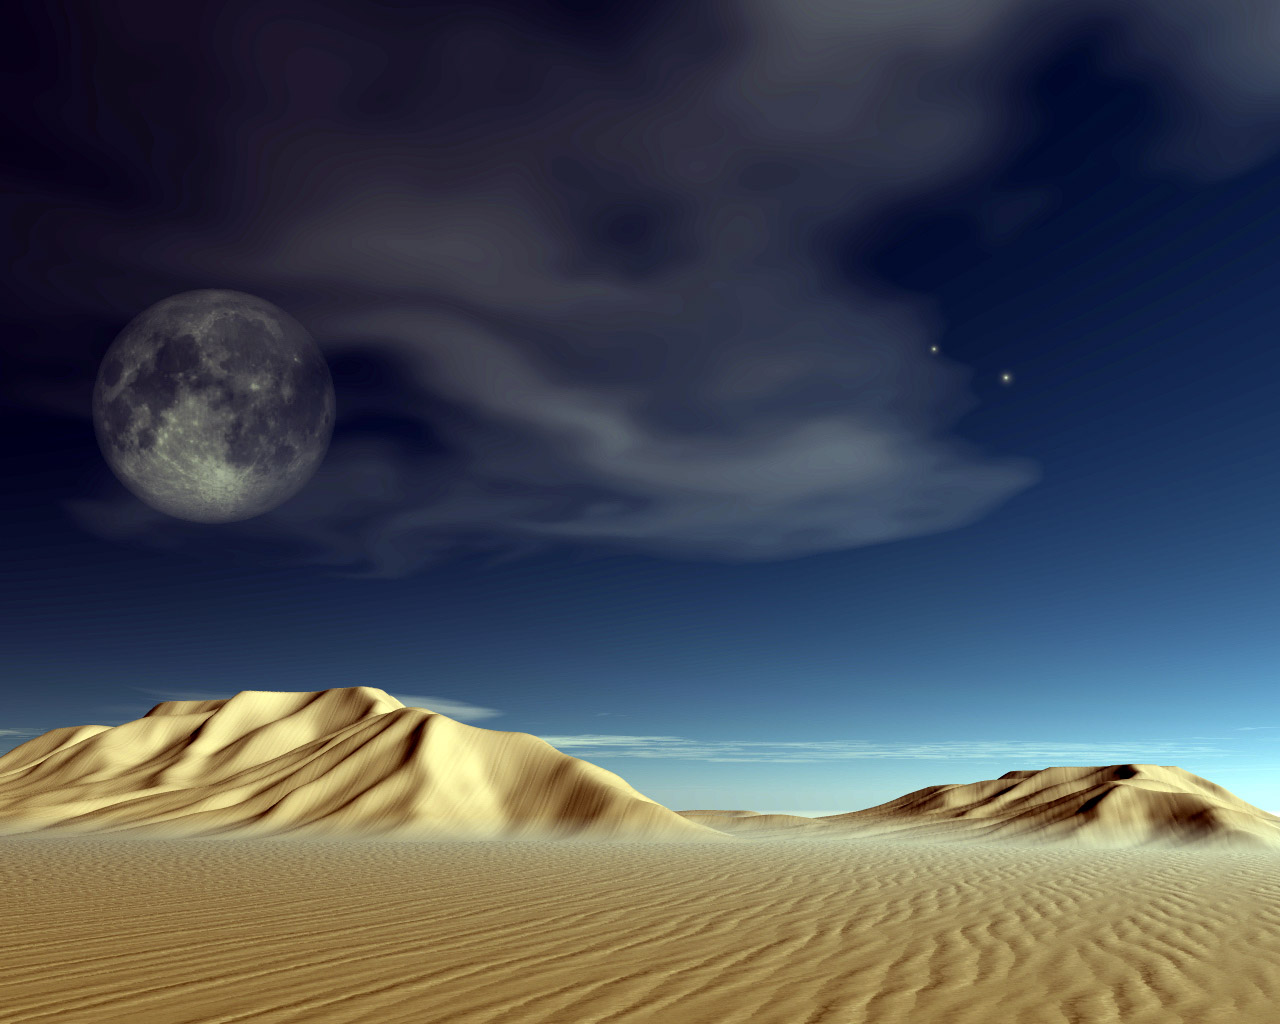 Với hình nền sa mạc đêm, bạn sẽ được tận hưởng vẻ đẹp đầy bí ẩn và ma mị của đồi cát. Hãy chiêm ngưỡng sa mạc vào ban đêm với các hình ảnh đặc biệt, giúp bạn tìm được sự bình yên và thoải mái.